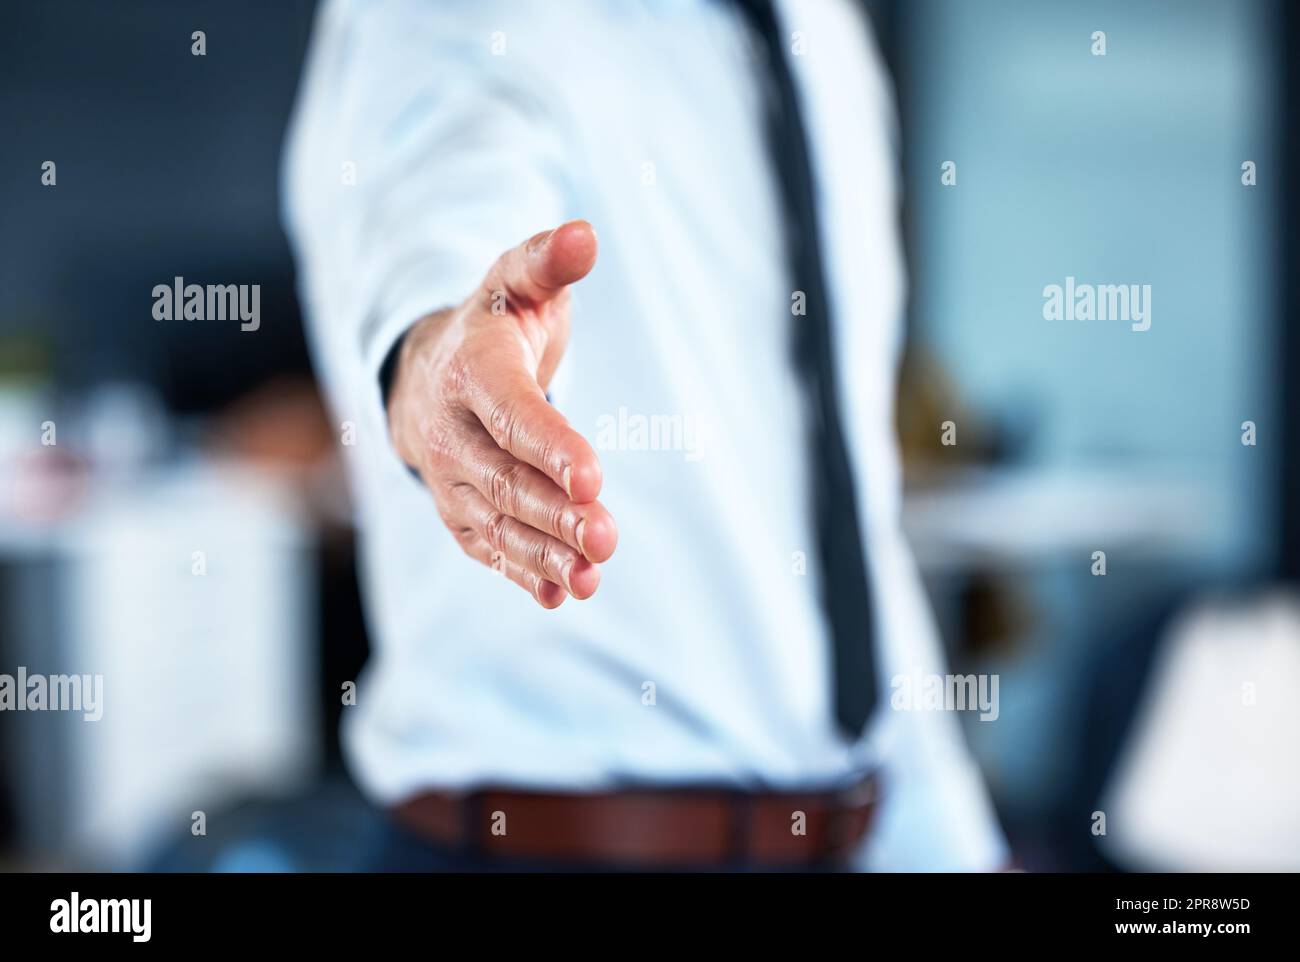 Benvenuti in azienda. Un imprenditore incognibile che si estende la mano per una stretta di mano. Foto Stock